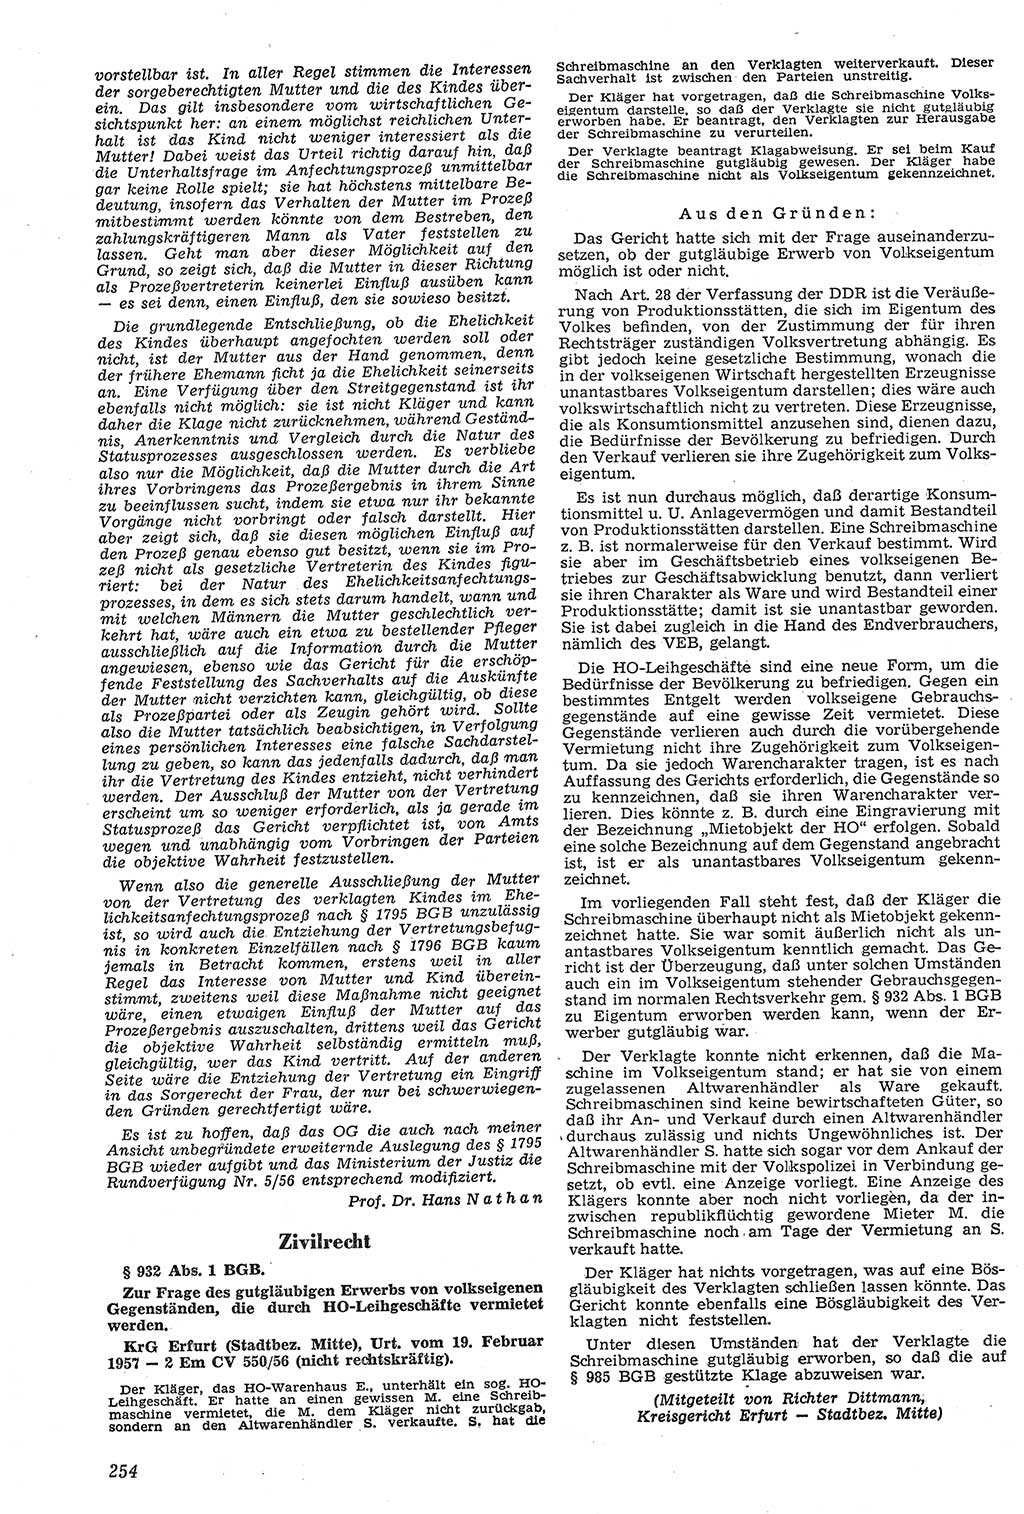 Neue Justiz (NJ), Zeitschrift für Recht und Rechtswissenschaft [Deutsche Demokratische Republik (DDR)], 11. Jahrgang 1957, Seite 254 (NJ DDR 1957, S. 254)